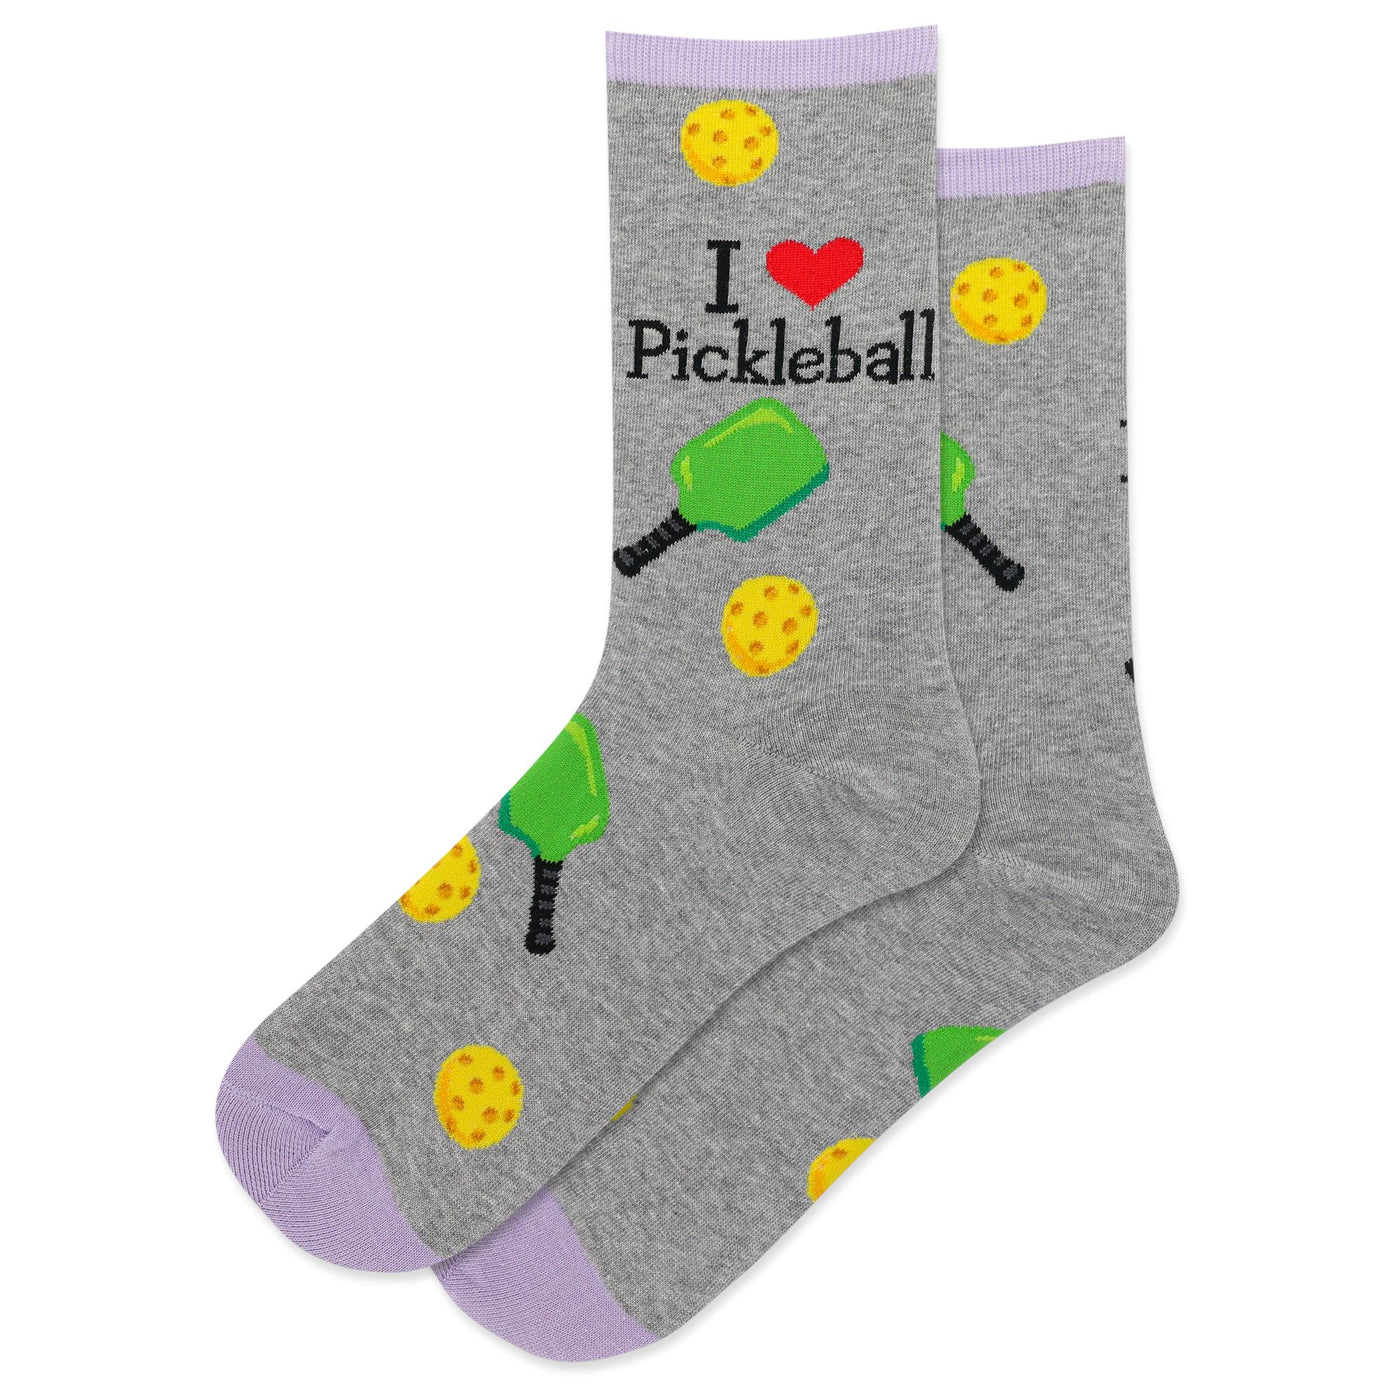 Pickleball Crew Socks | Women's - Knock Your Socks Off